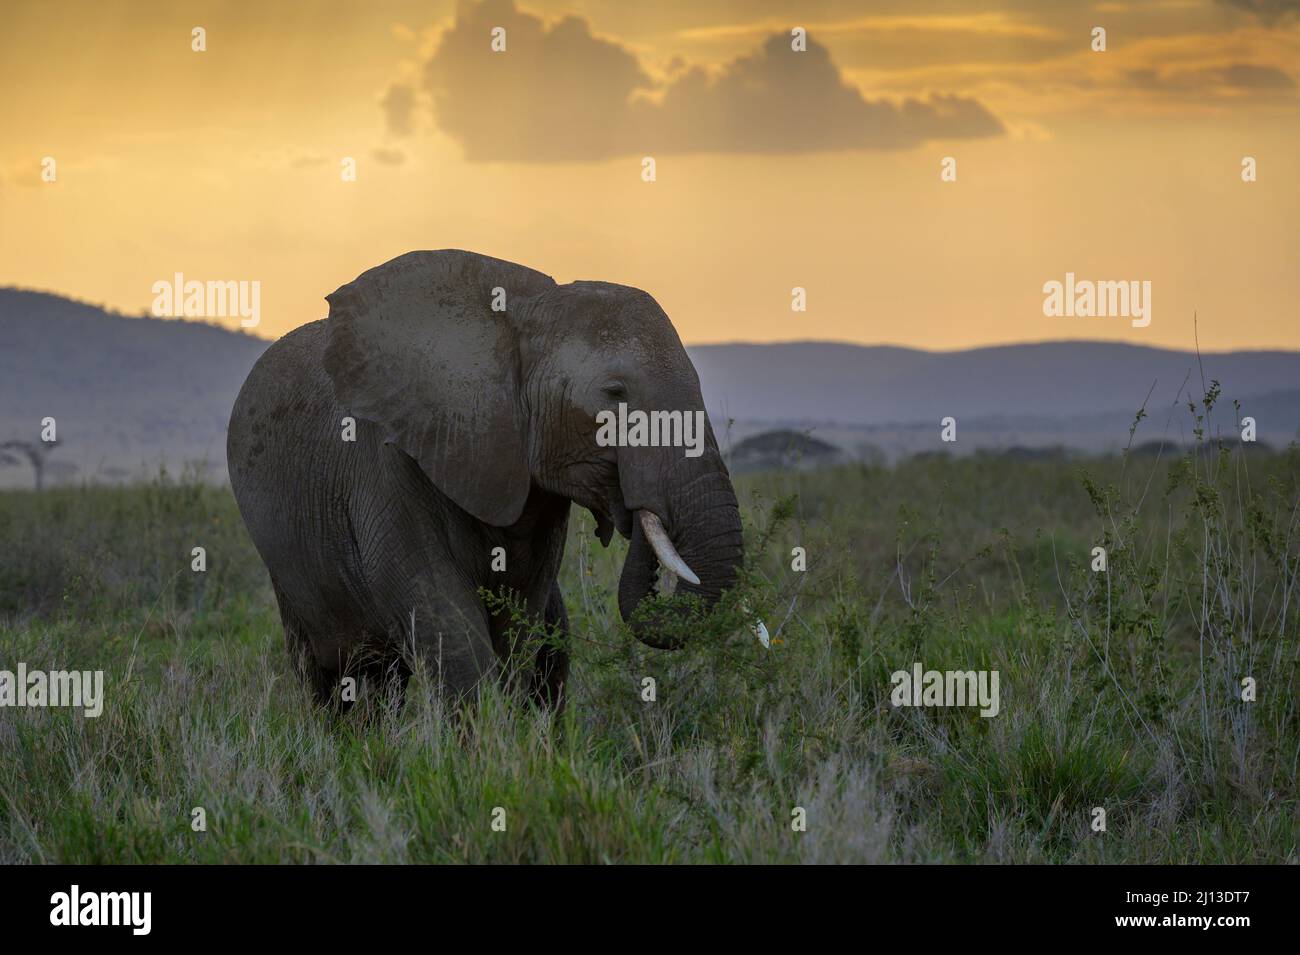 Elefante africano (Loxodonta africana) comiendo hierba en la sabana con puesta de sol, Parque Nacional Serengeti, Tanzania. Foto de stock